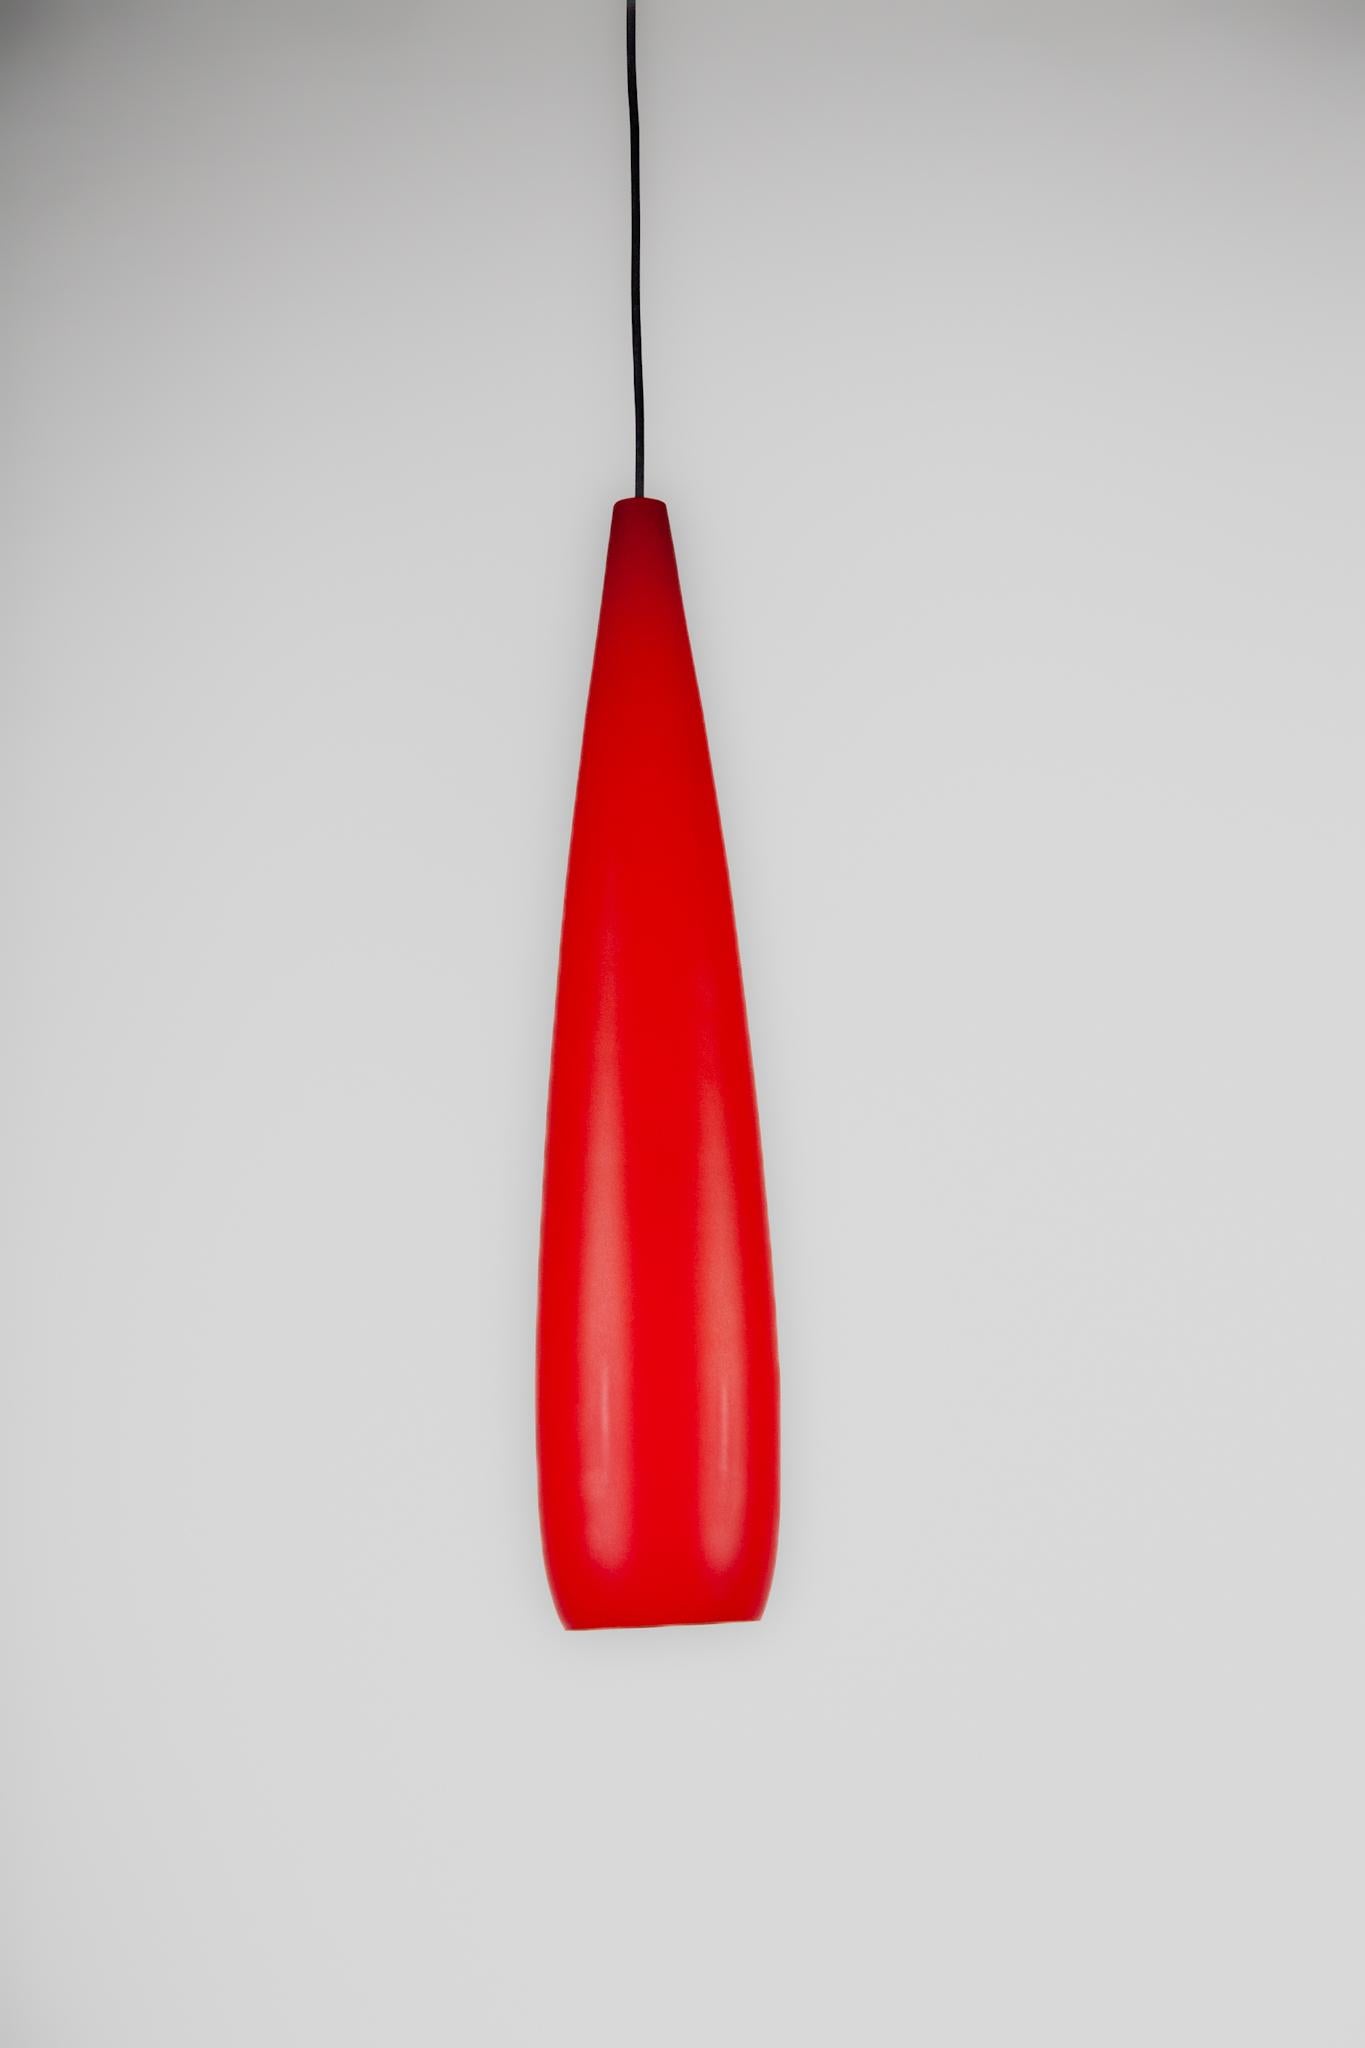 Cette grande lampe suspendue a été conçue par Alessandro Pianne pour Vistosi, à Murano, dans les années 1960.
Cette élégante lampe suspendue est faite en verre de Murano rouge opale, une lampe de très haute qualité en bon état.Hauteur du verre 62 cm.